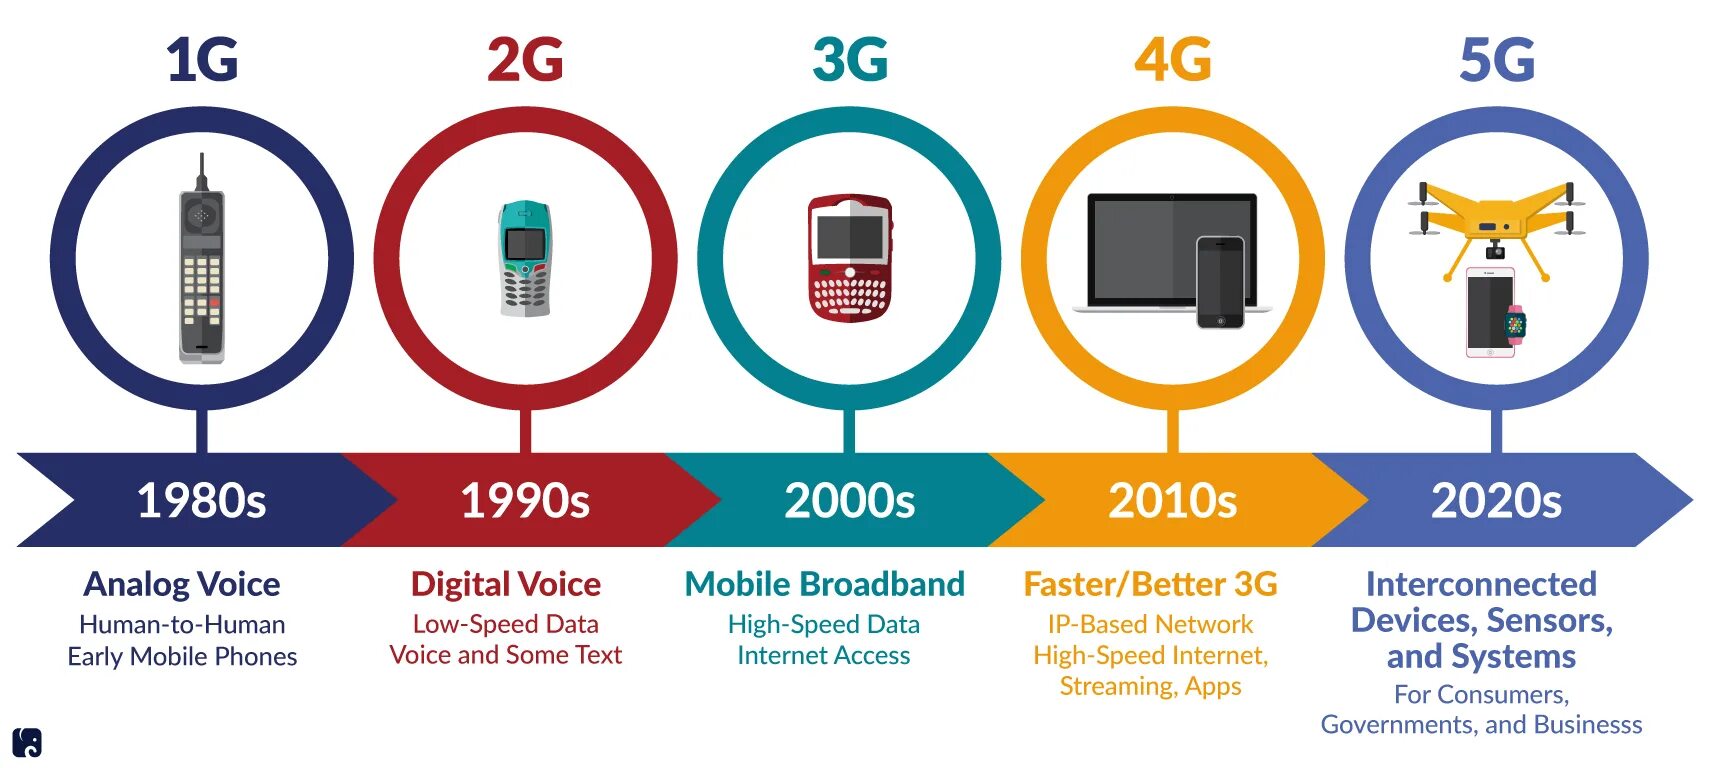 Почему не видит 5g. Поколения сотовой связи 2g 3g и 4g. Технологии сотовой связи 2g 3g 4g. 4g стандарты сотовой сети. Сотовая связь 1g 2g 3g 4g 5g.